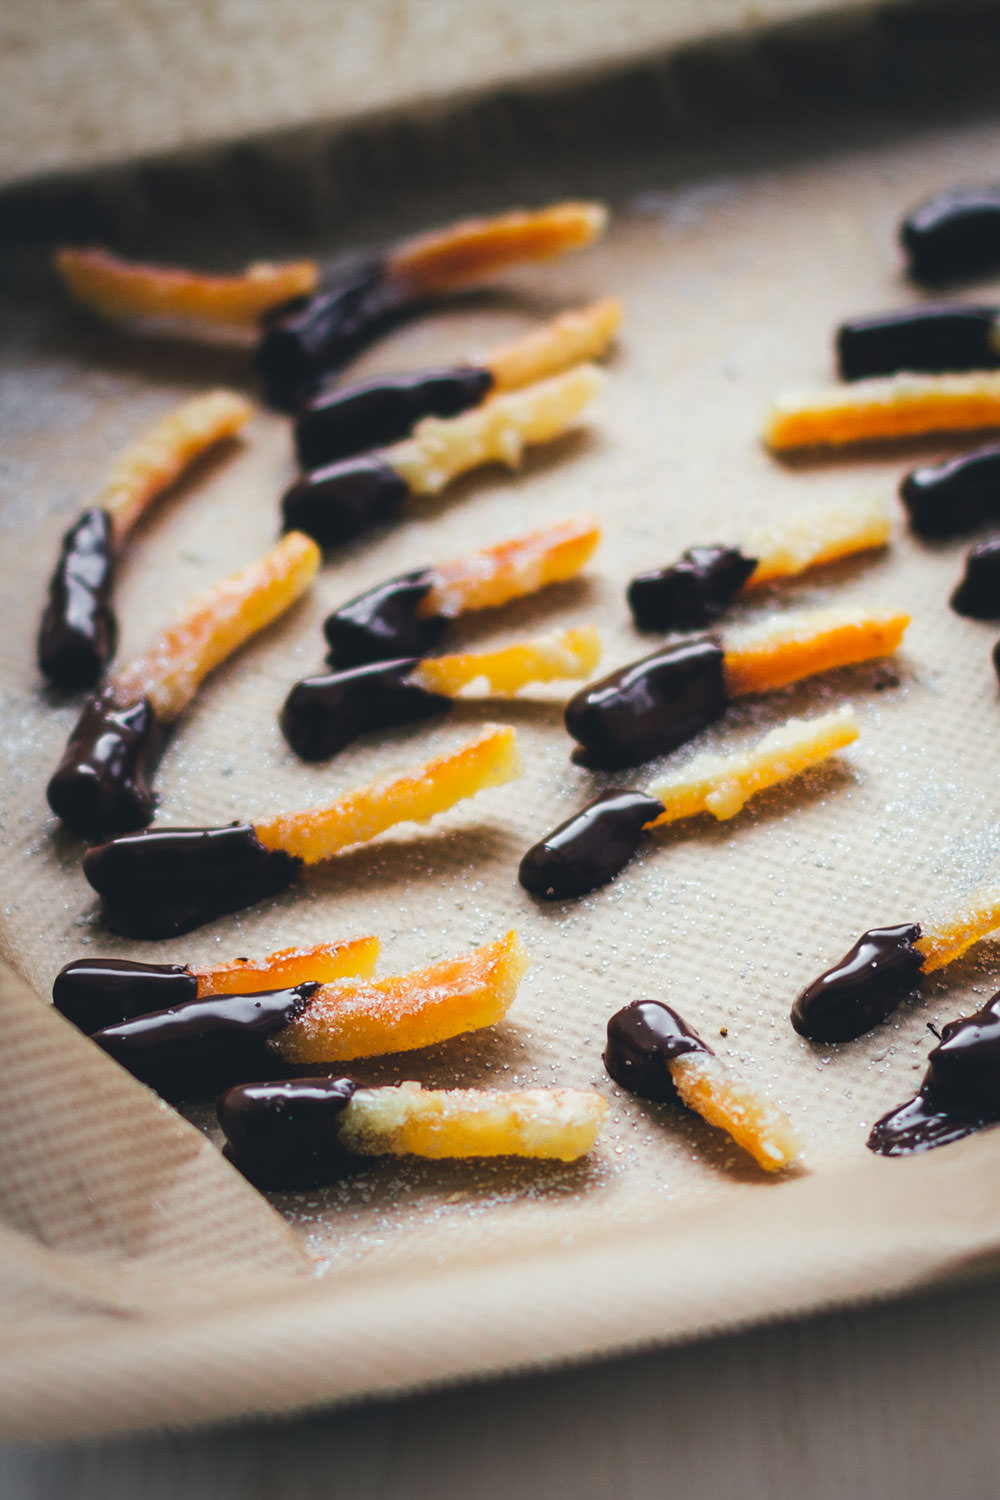 Rezept für selbst gemachte kandierte Orangenschale mit Schokolade | einfach und schnell | moeyskitchen.com #orangenschale #kandierteorangenschale #schokolade #rezepte #foodblogger